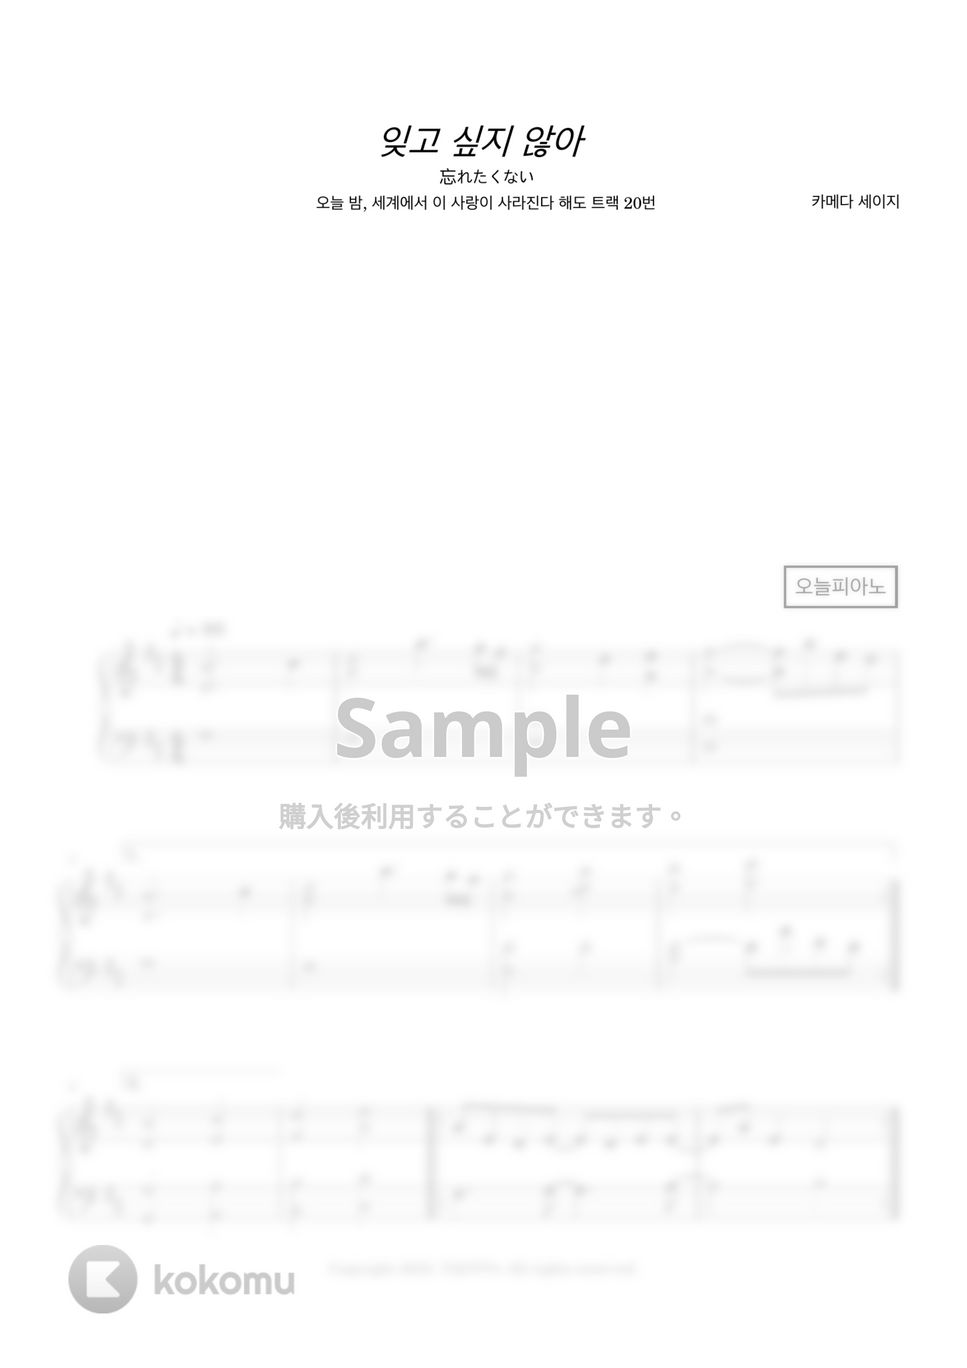 Seiji Kameda - 忘れたくない (今夜、世界からこの恋が消えても track 20) by 今日ピアノ(Oneul Piano)